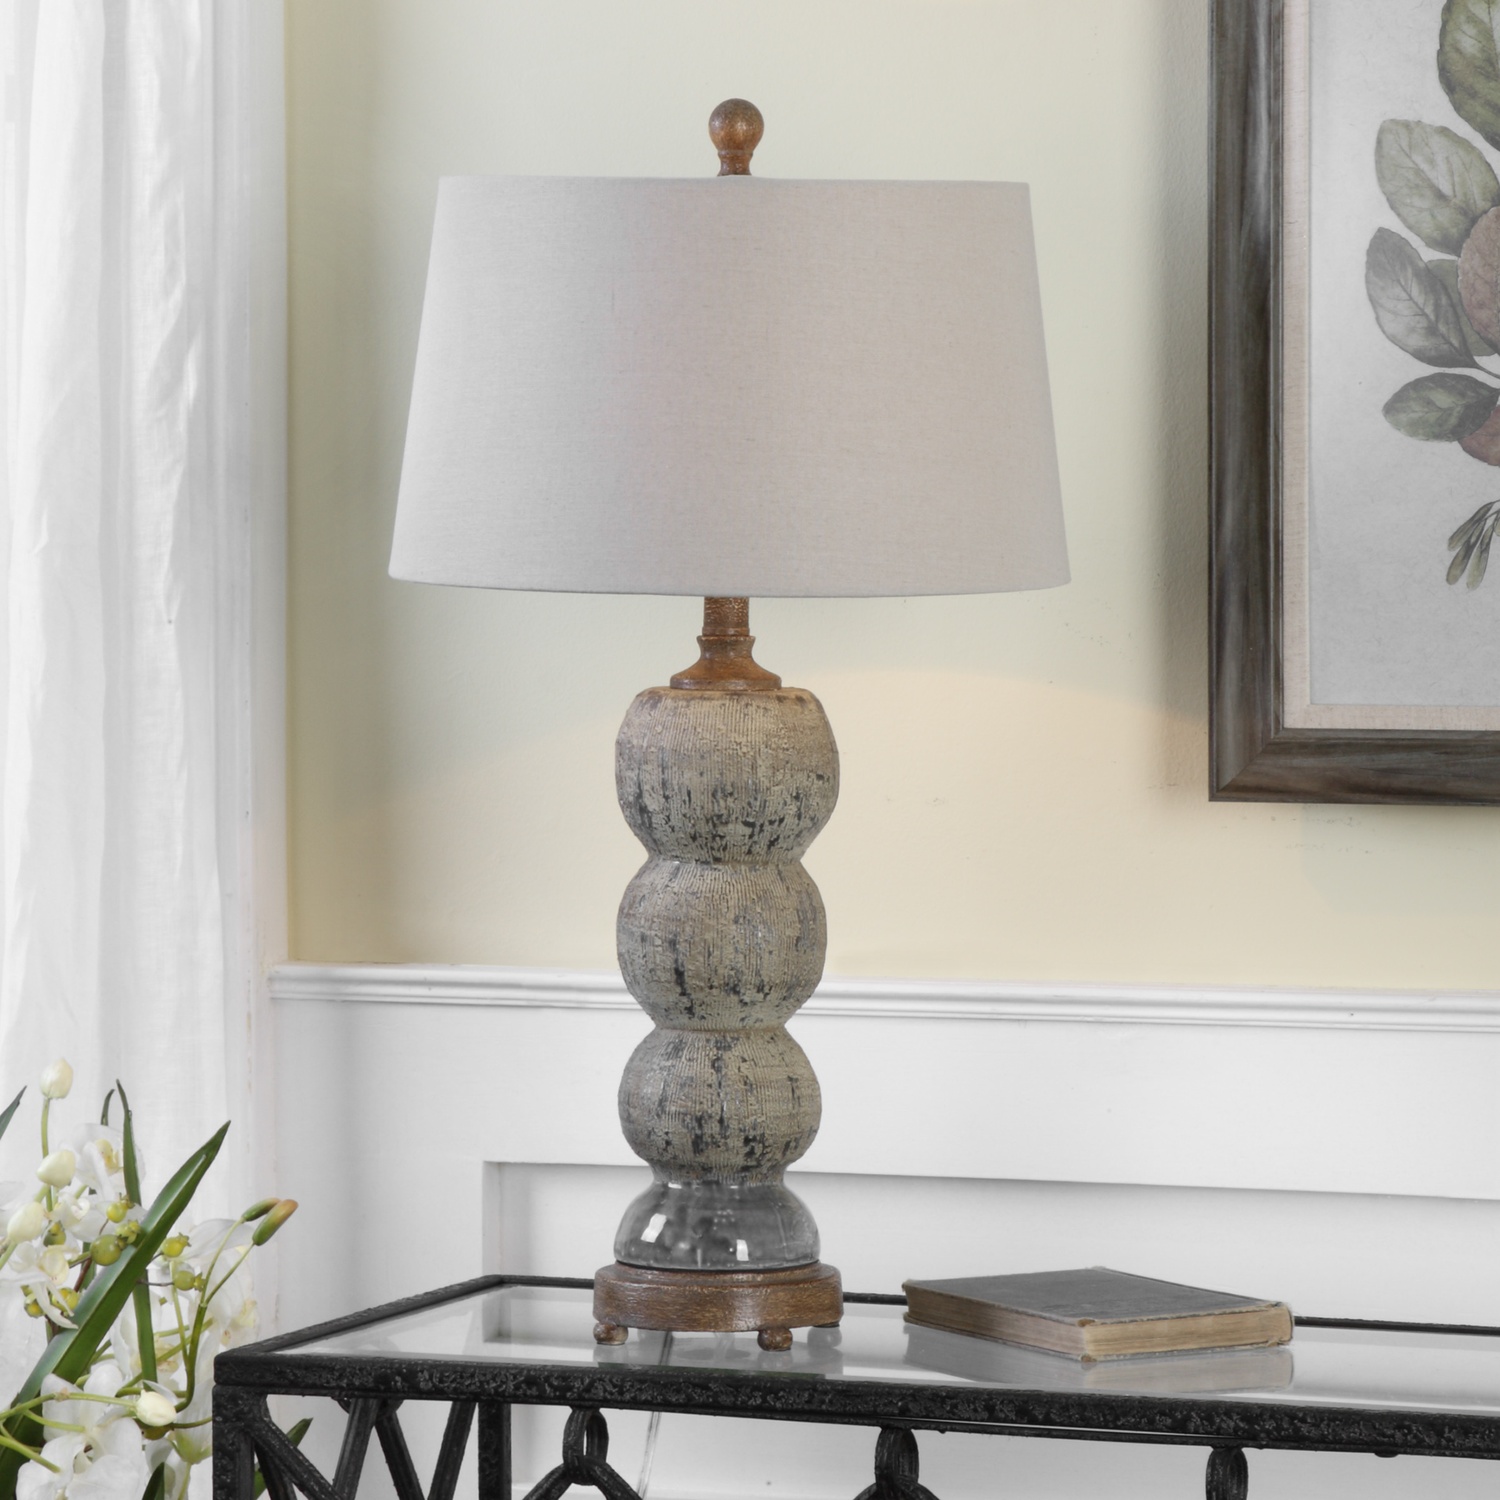 Amelia-Textured Ceramic Lamp